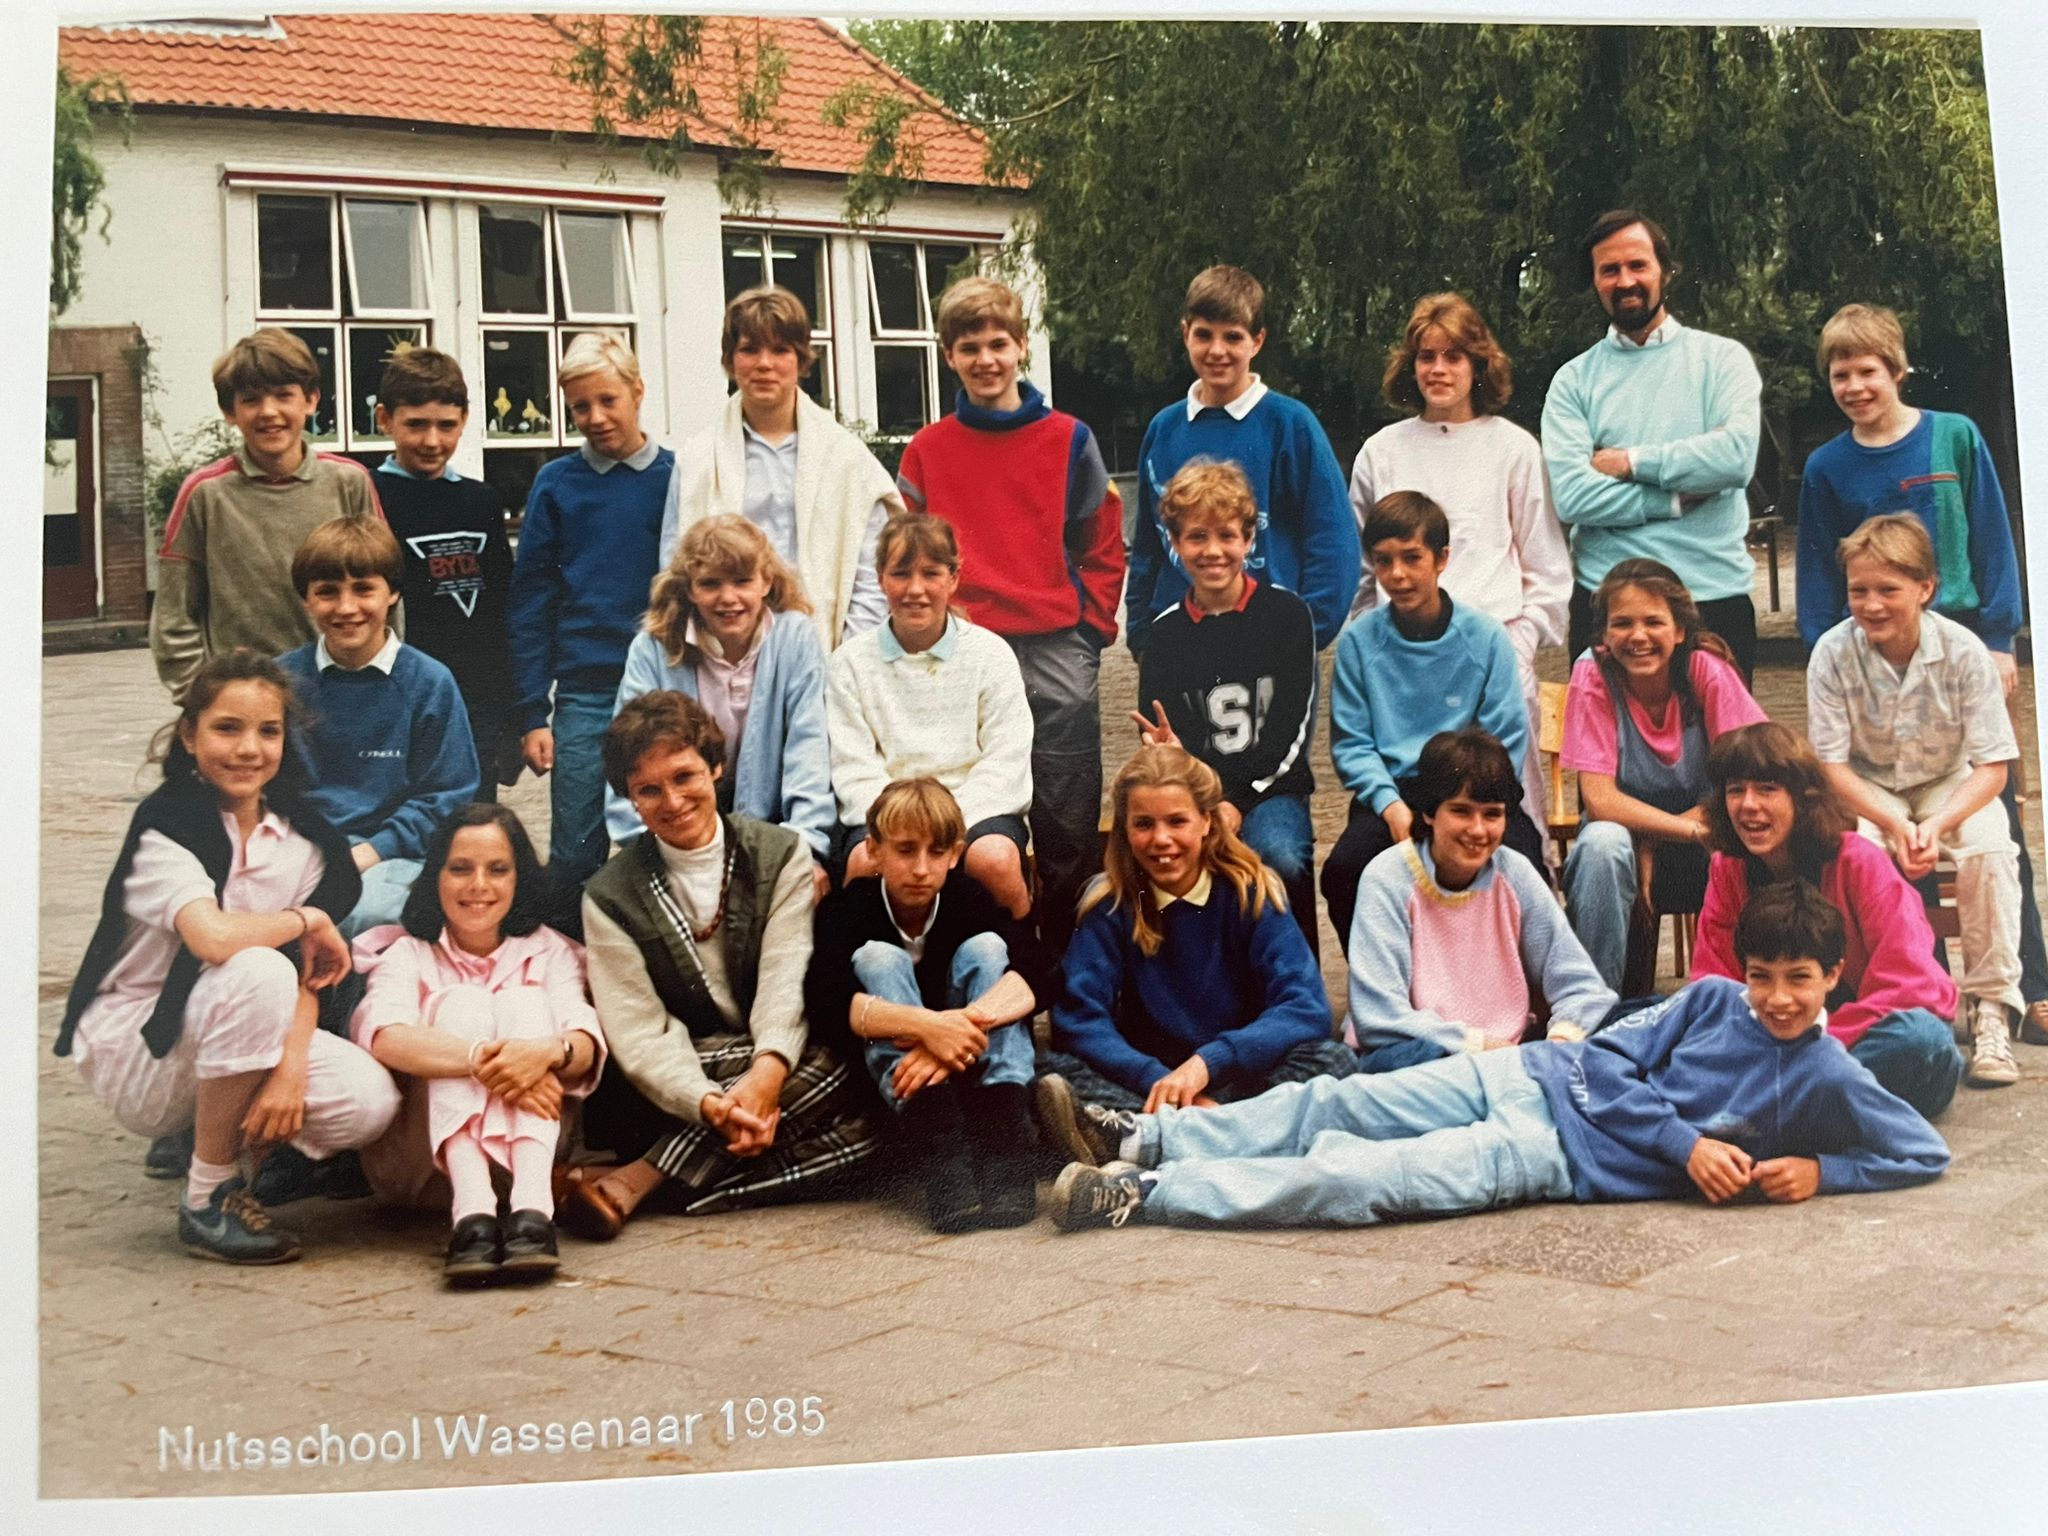 Vereniging Nutsschool Wassenaar foto